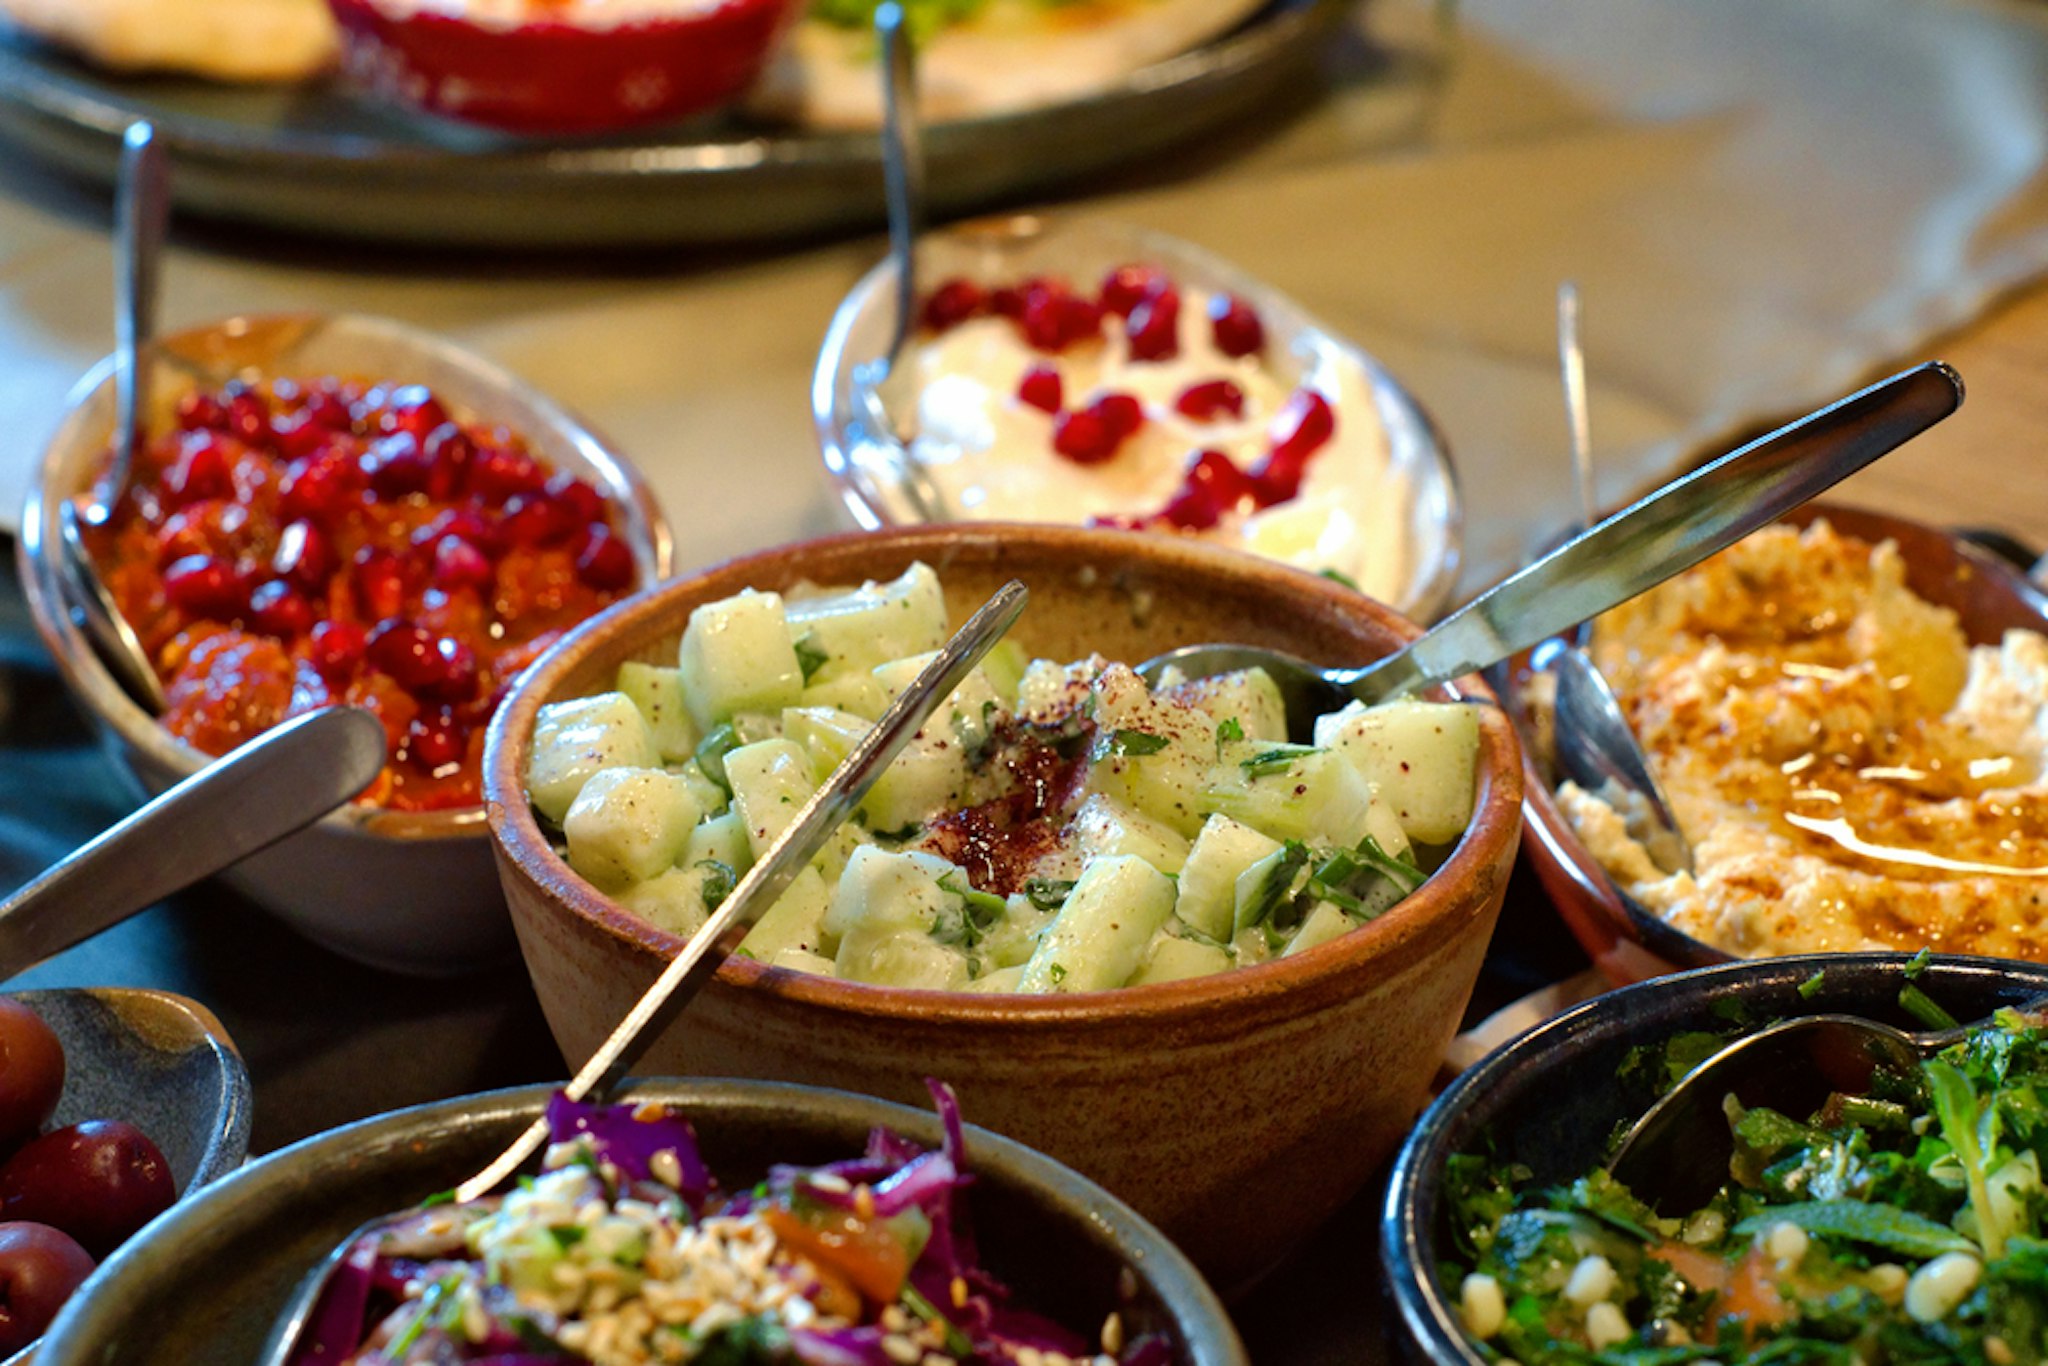 Arabic meze platter (starters) - hummus, mutabbal, babaganosh, tabbouleh, pita